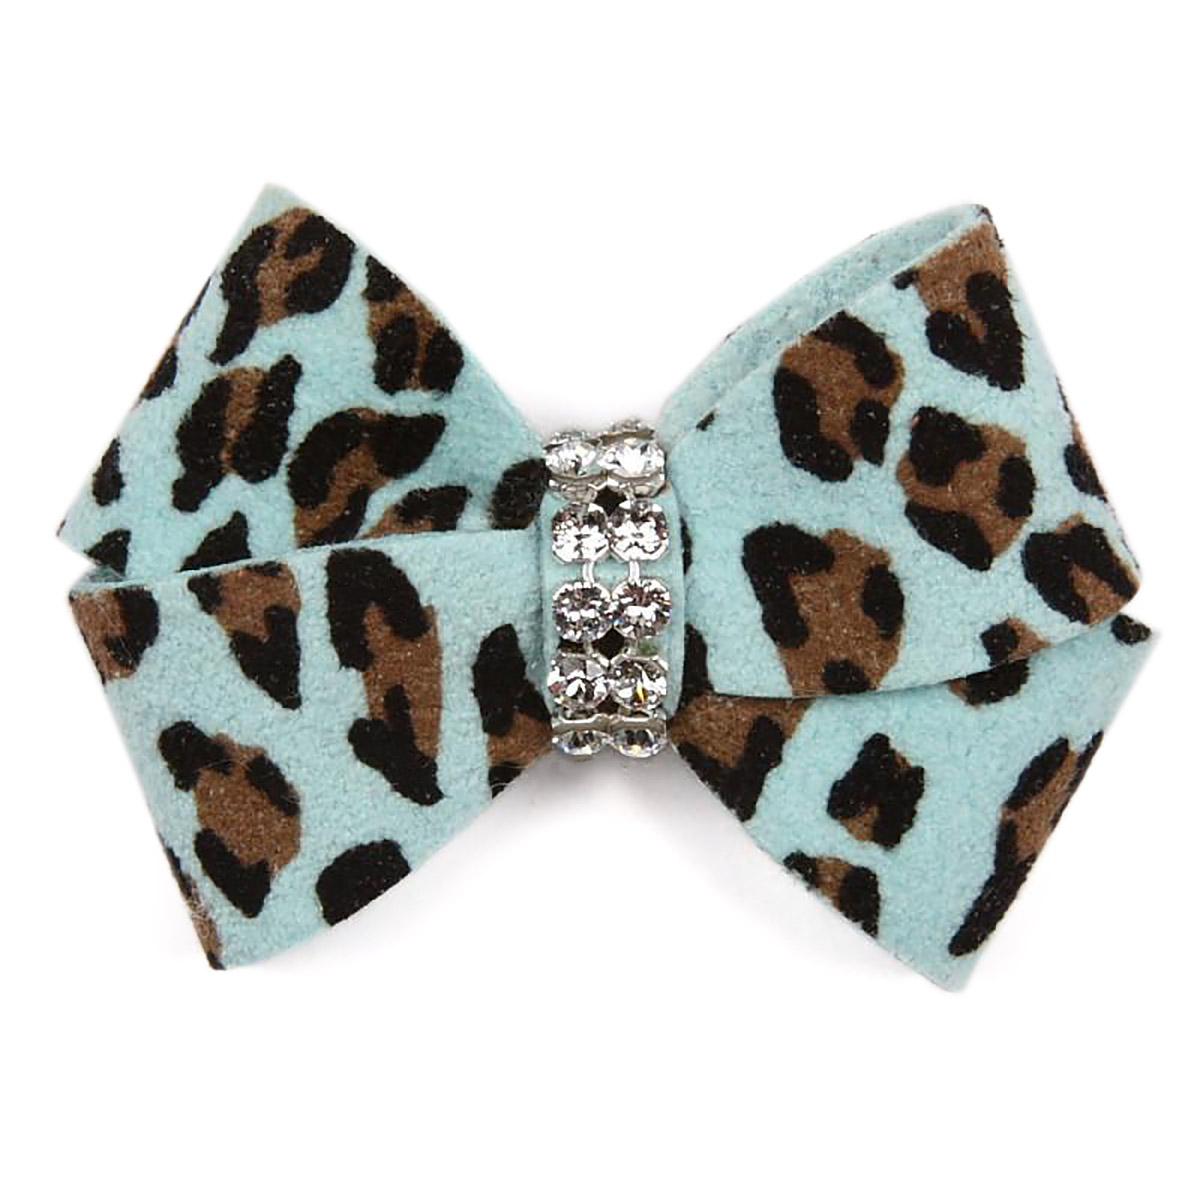 Cheetah Couture Nouveau Bow Dog Hair Bow by Susan Lanci - Tiffi Cheetah